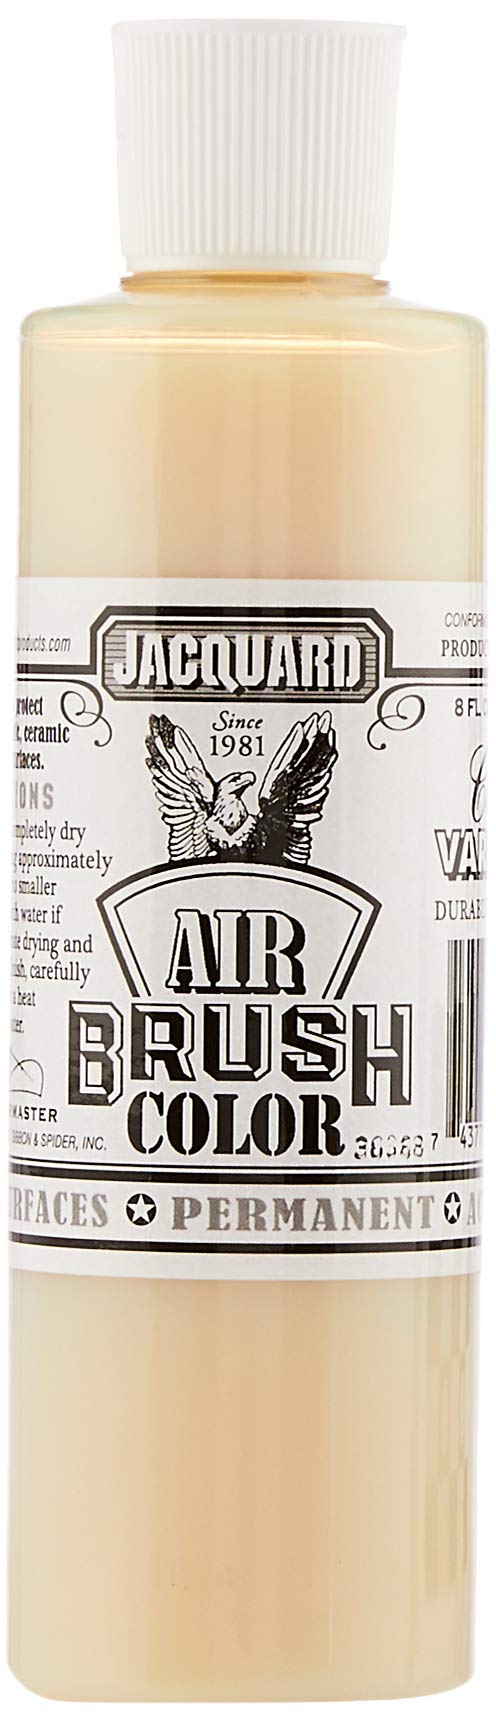 Jacquard Jac Airbrush Varnish 8Oz Air Brush Paint